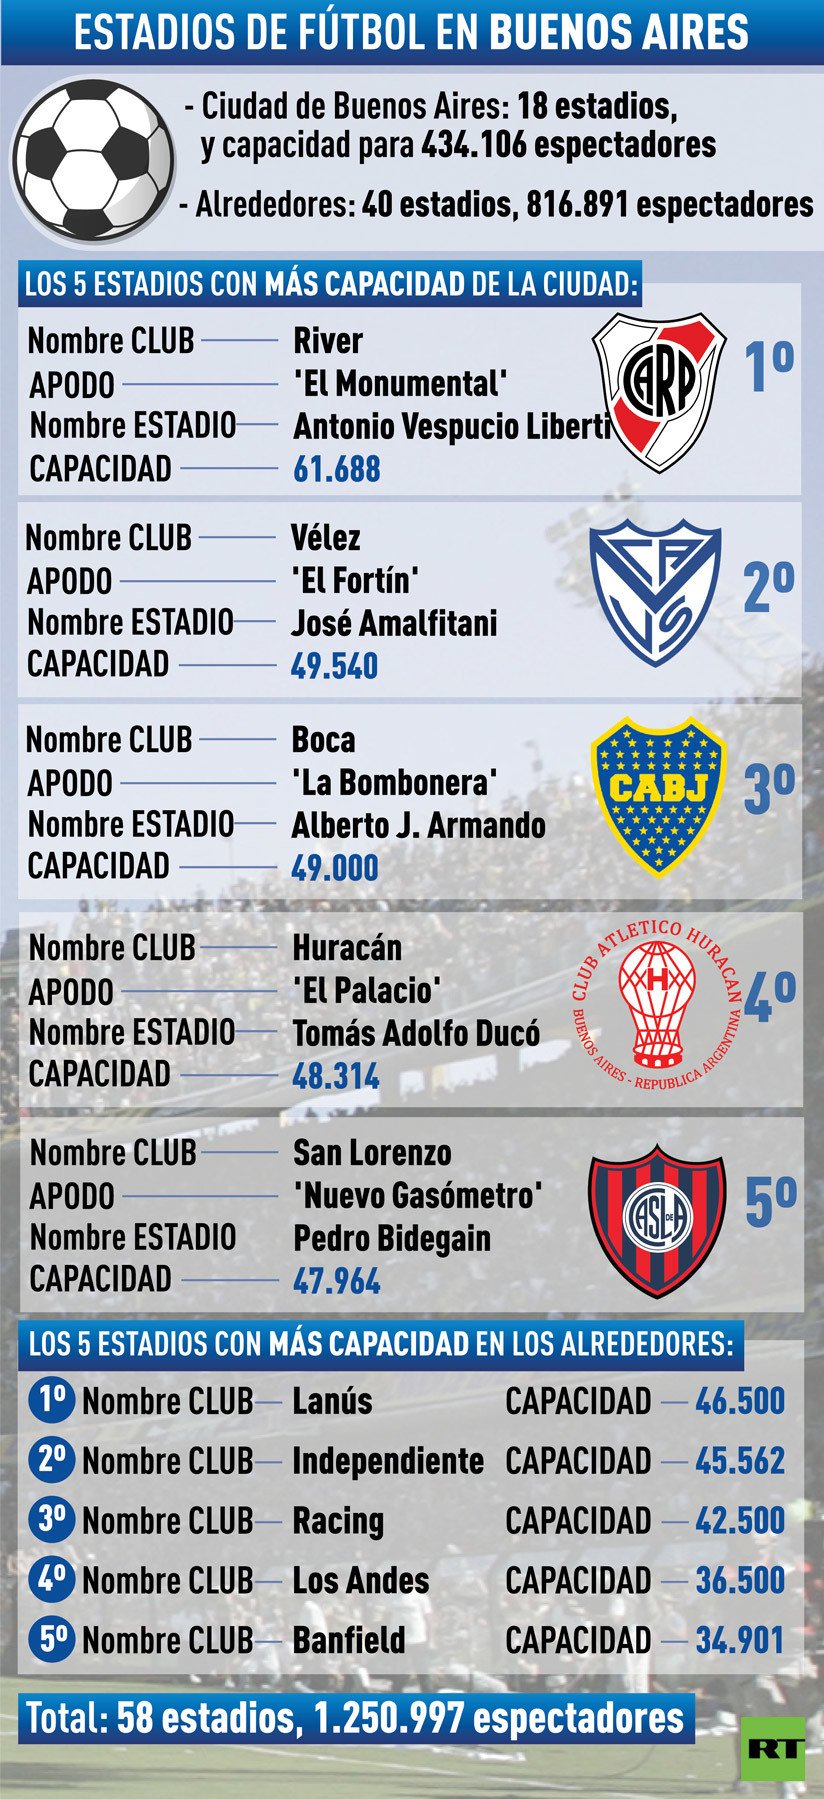 ¿Cuántos equipos de fútbol profesional hay en Buenos Aires Argentina?